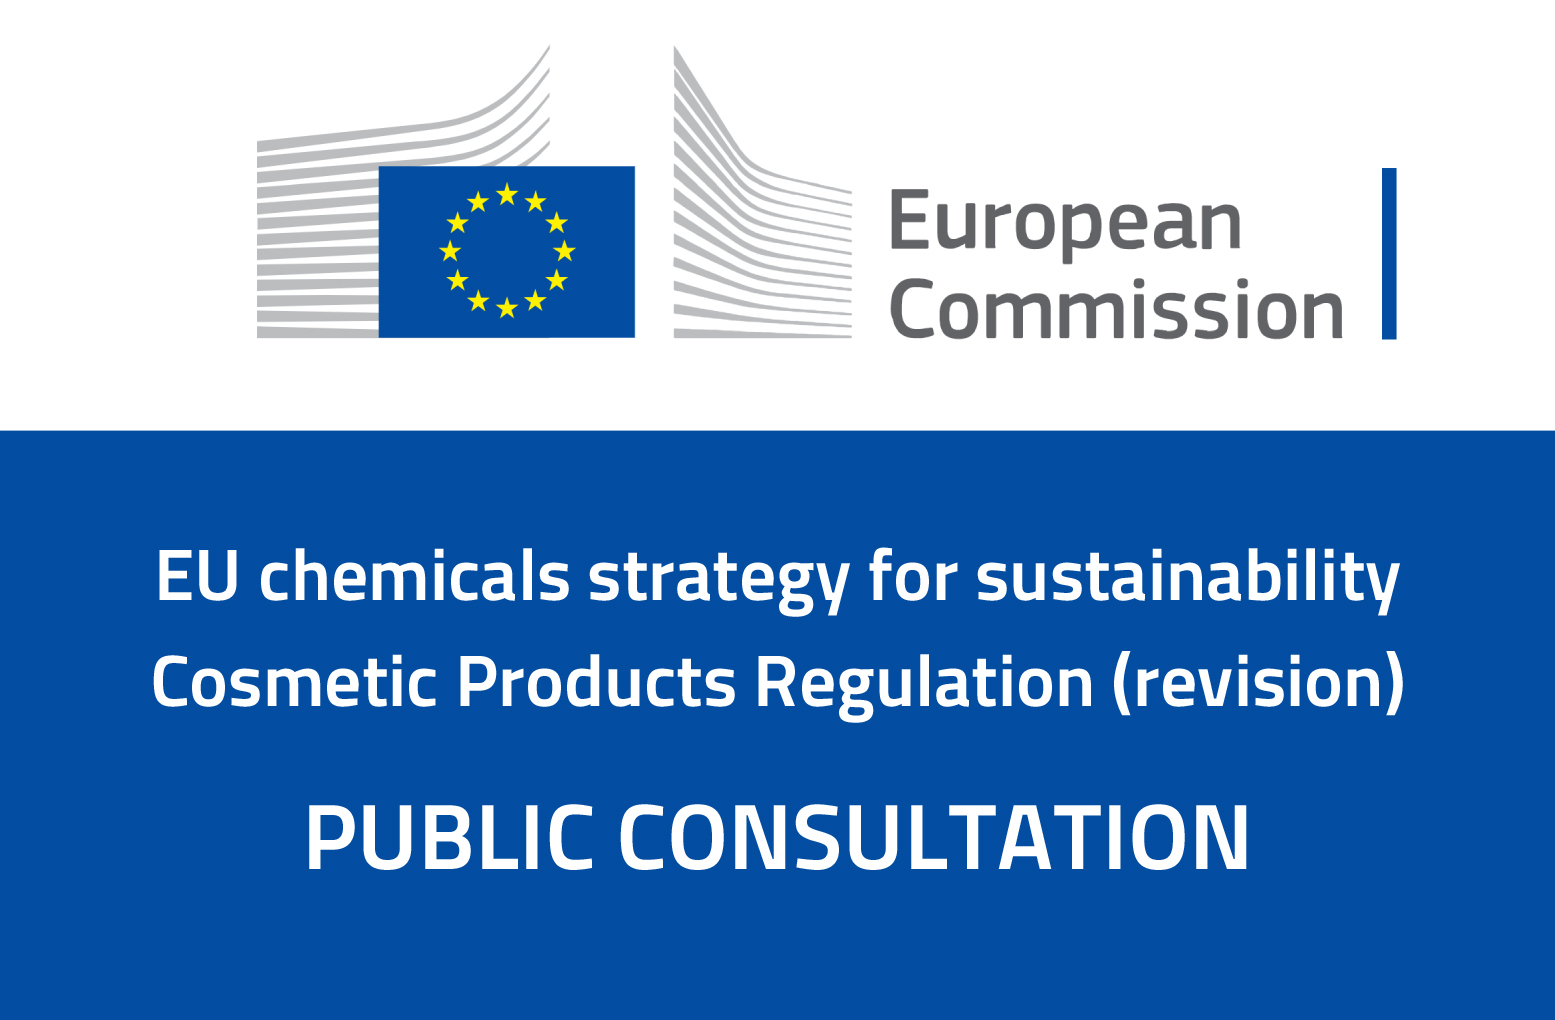 Révision de la réglementation sur les produits cosmétiques / Consultation publique de la Commission Européenne